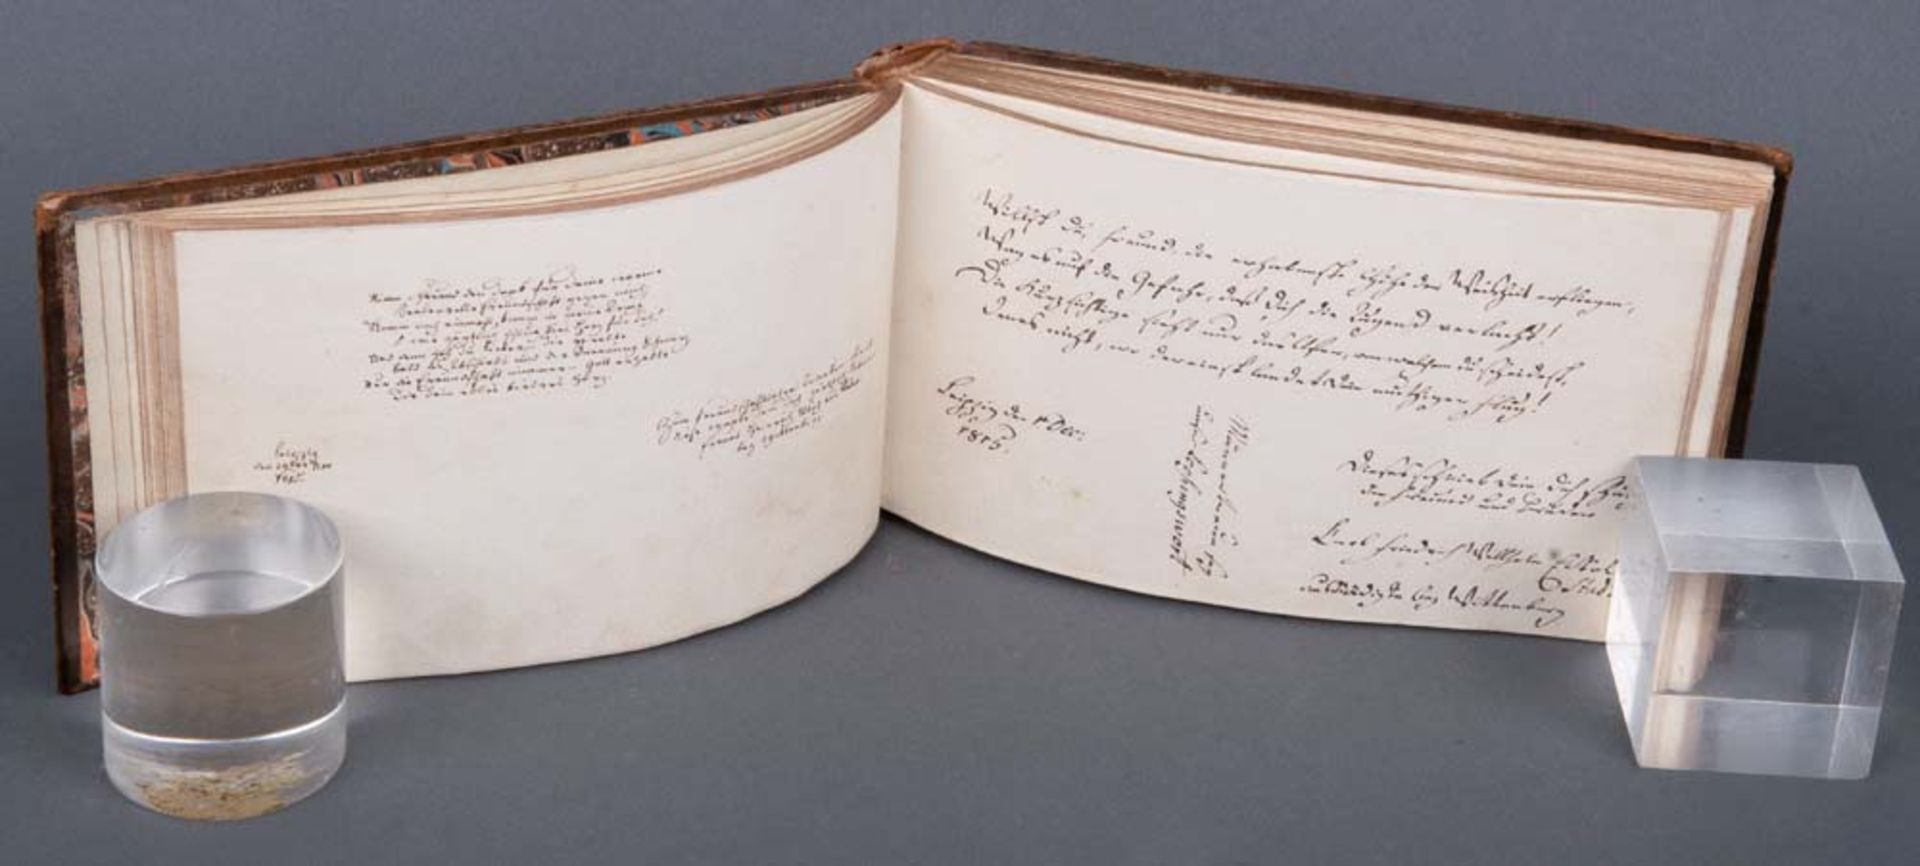 Tagebuch mit Eintragungen von 1815 bis 1833. Goldgeprägter Lederumband. - Bild 3 aus 3